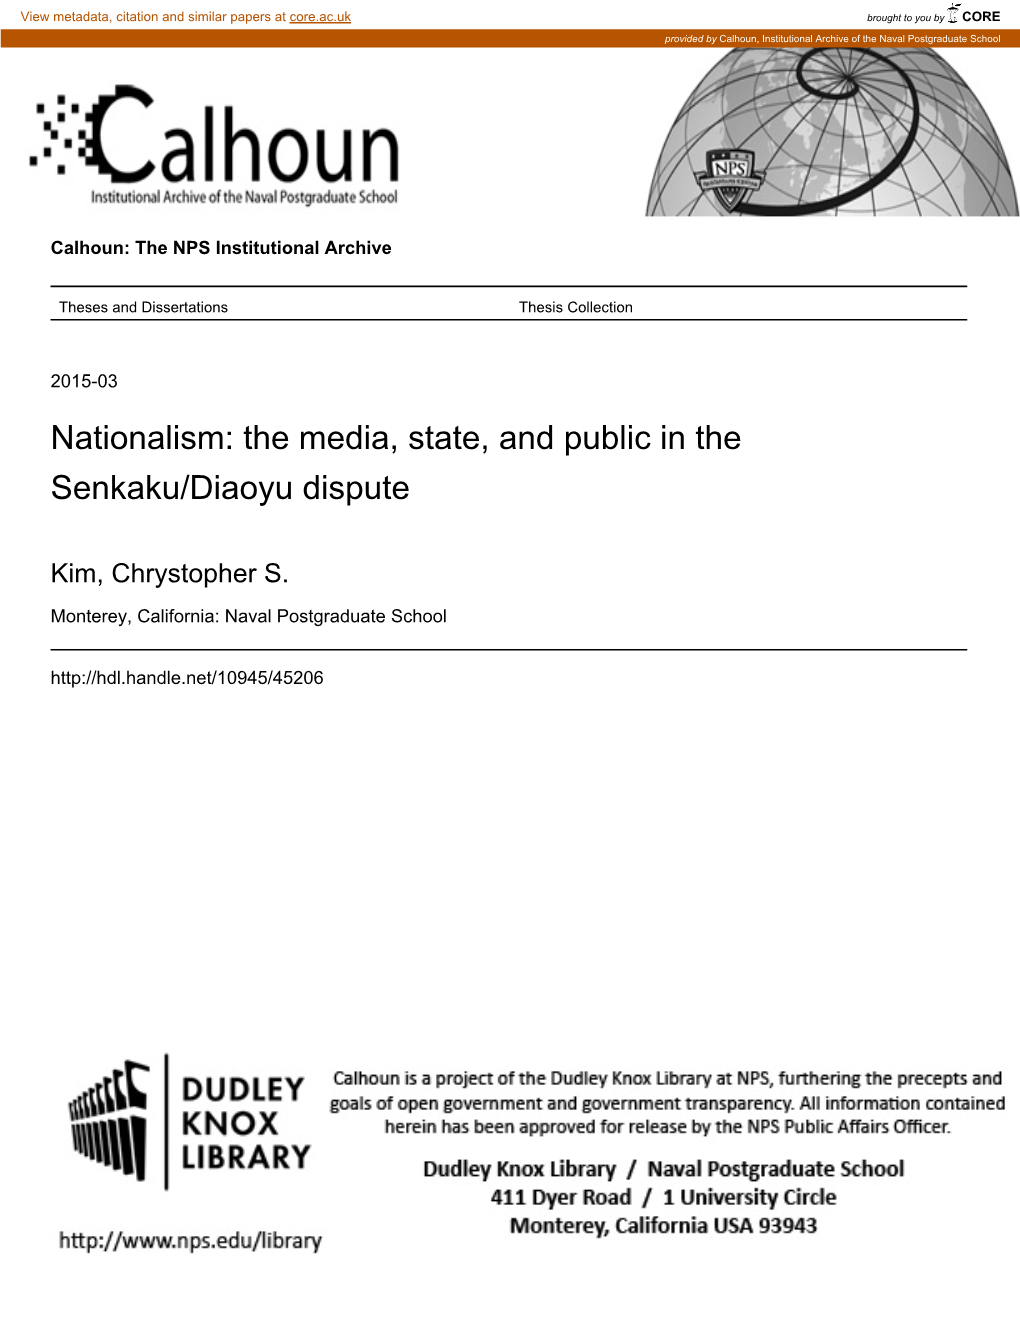 The Media, State, and Public in the Senkaku/Diaoyu Dispute